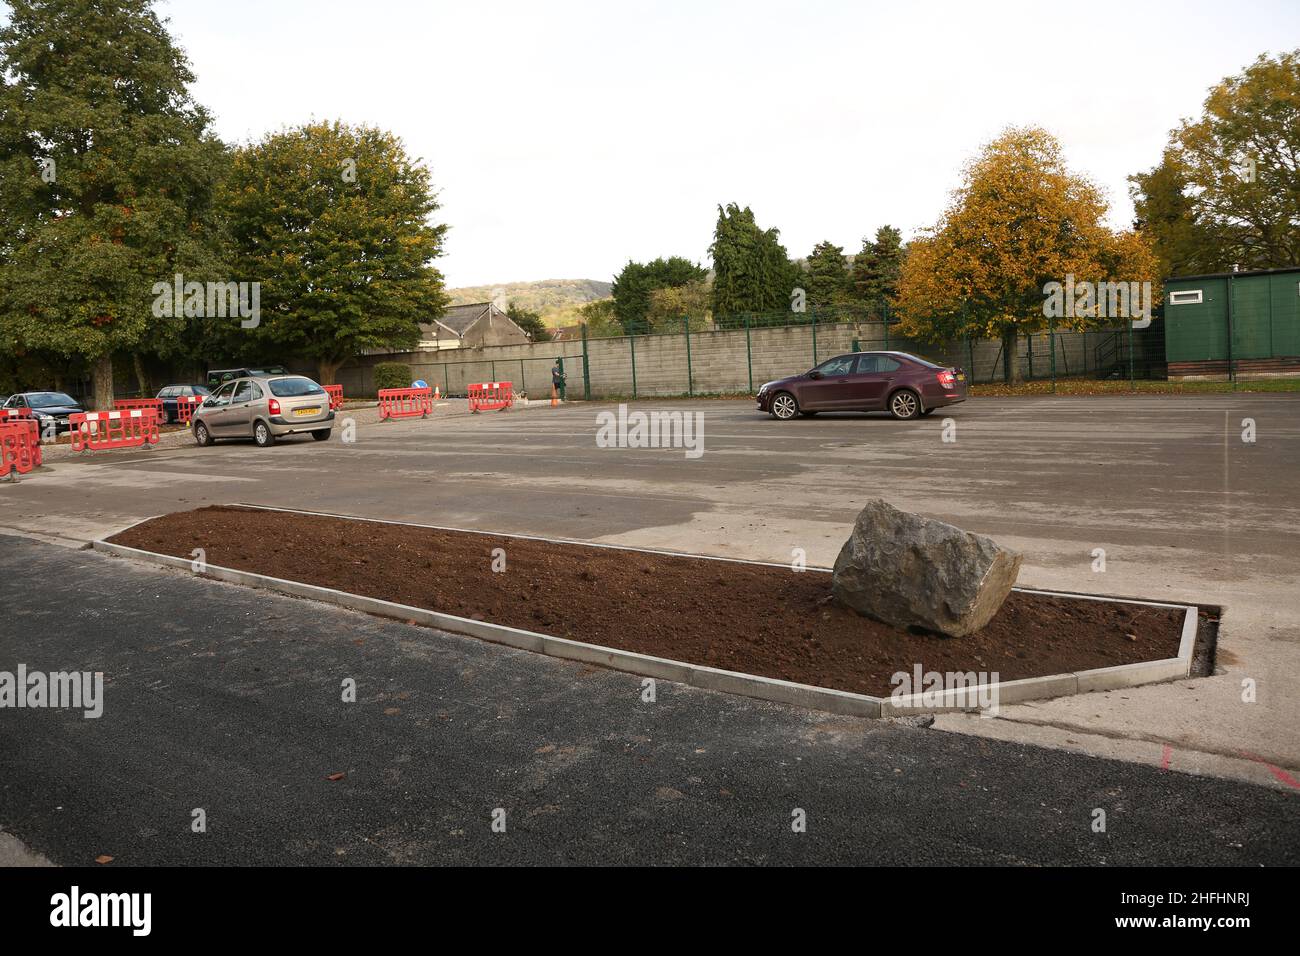 Oktober 2015 - Neues Hochbeet auf einem Parkplatz Stockfoto